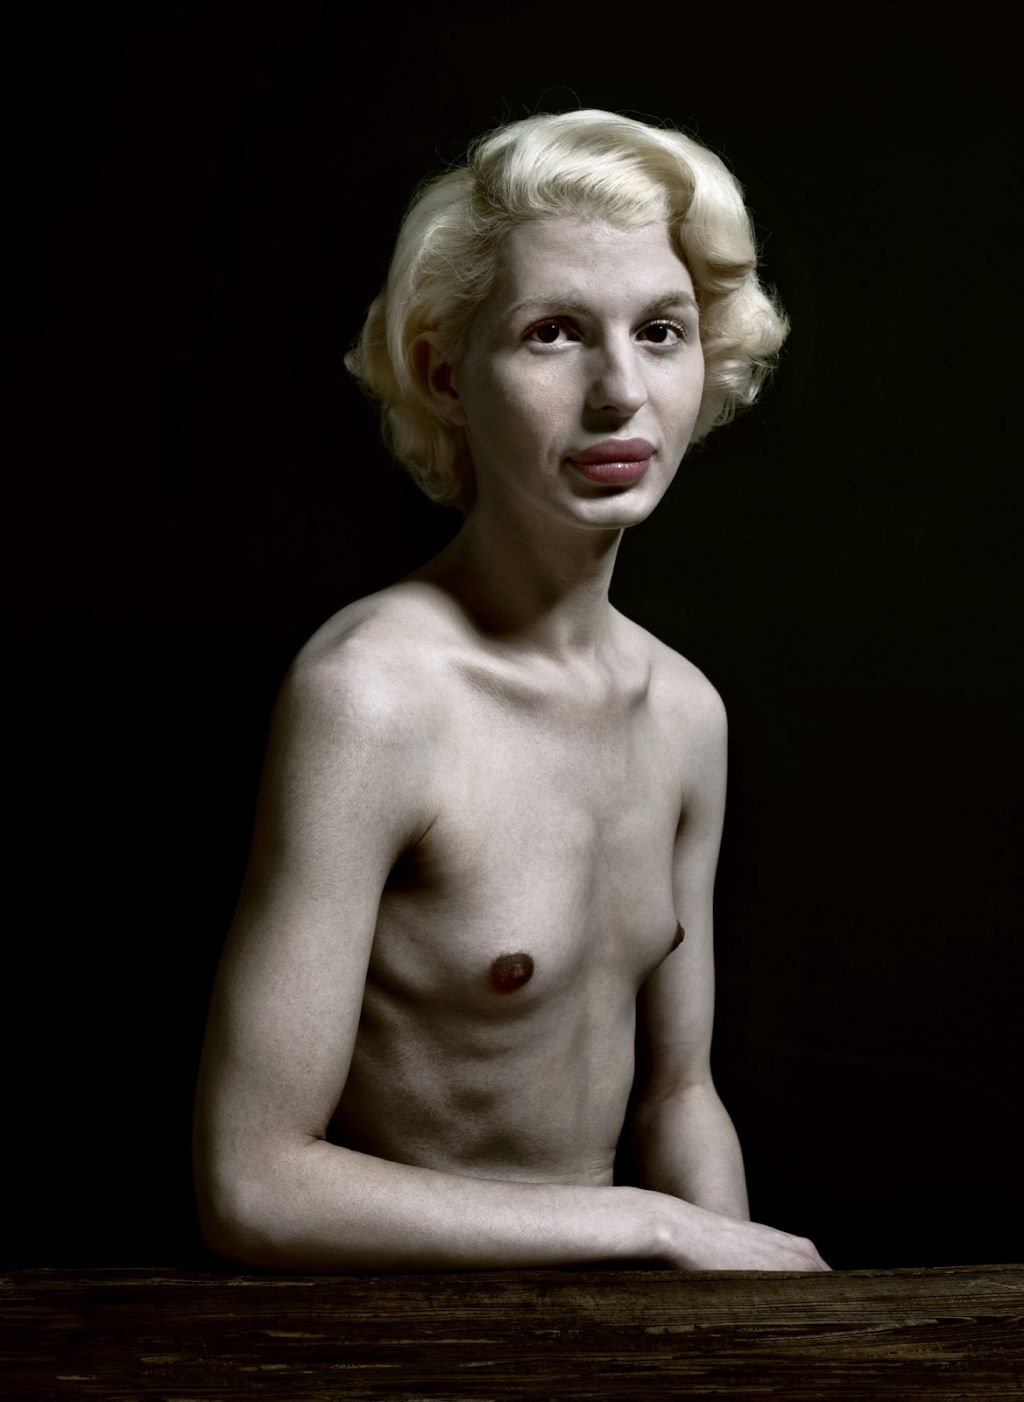 Plstica beleza: retratos de pessoas com cirurgia esttica extrema 09